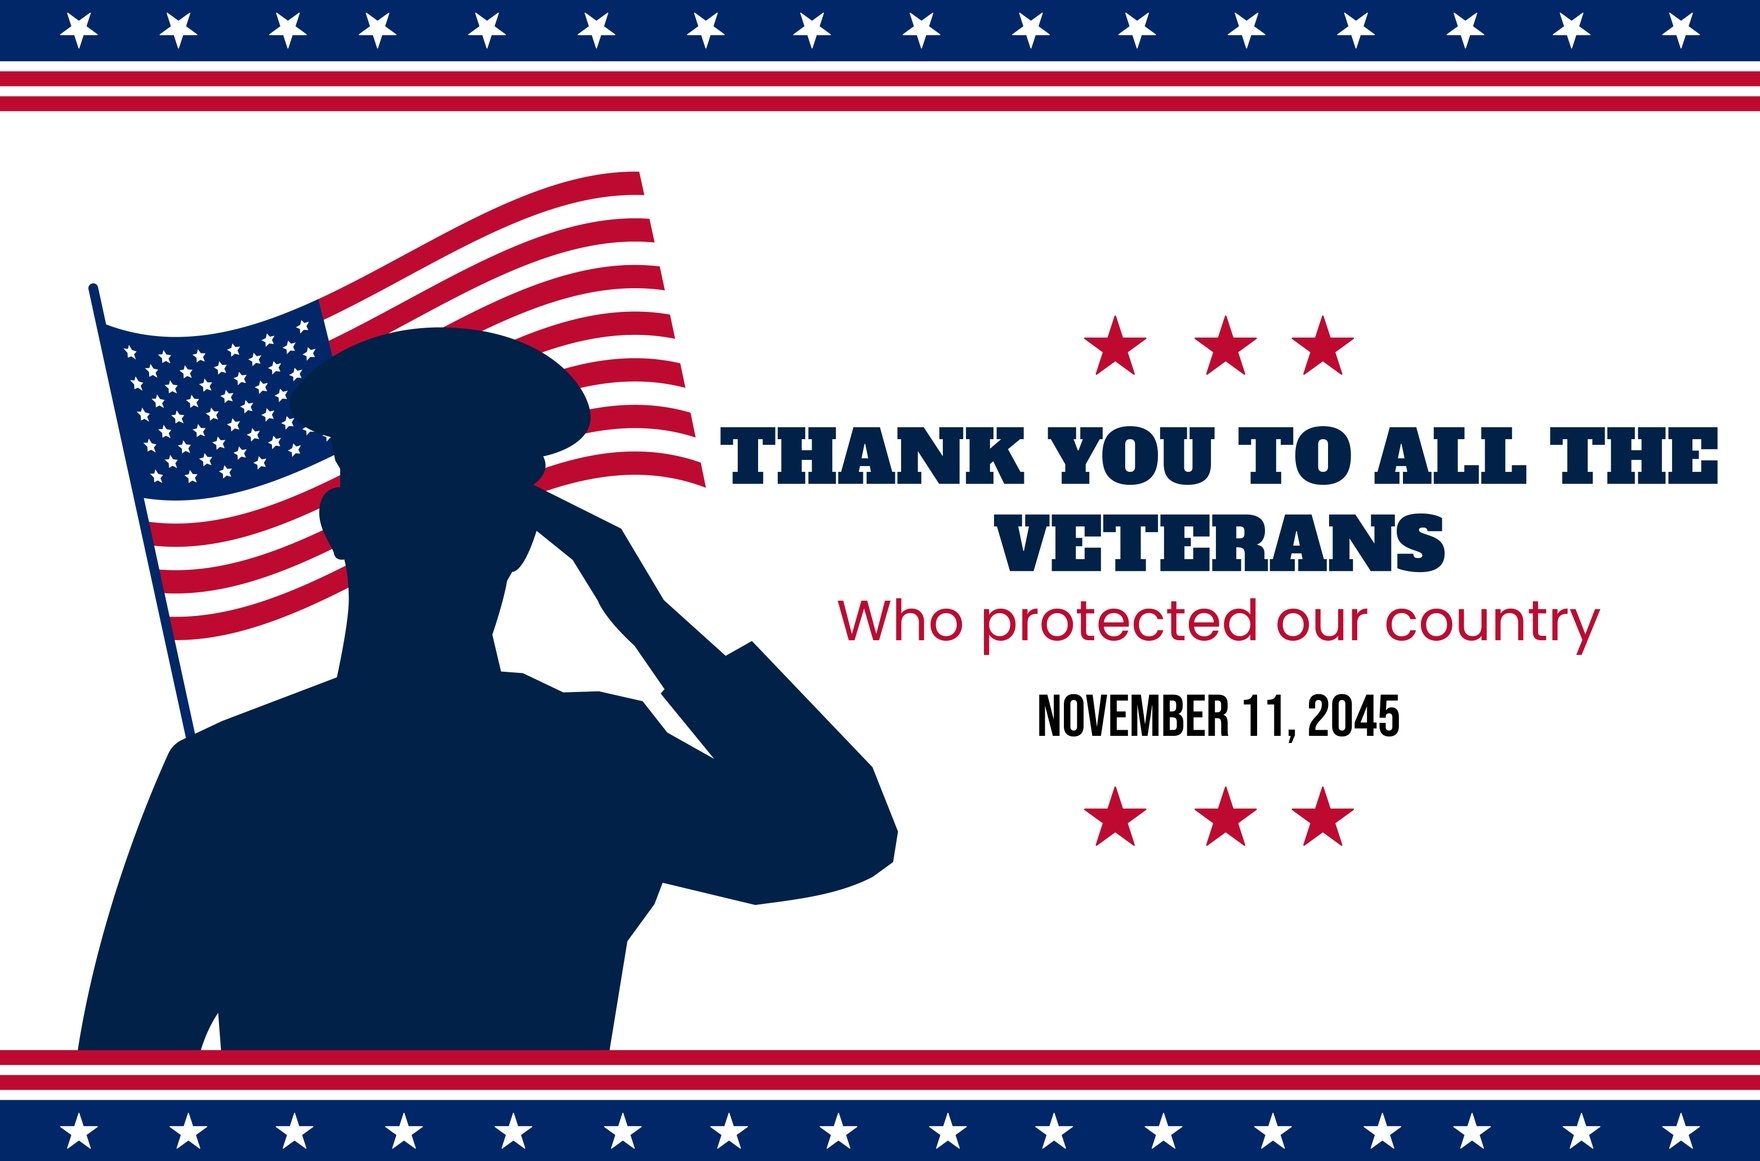 Free Veterans Day Instagram post in Illustrator, PSD, EPS, SVG, JPG, PNG